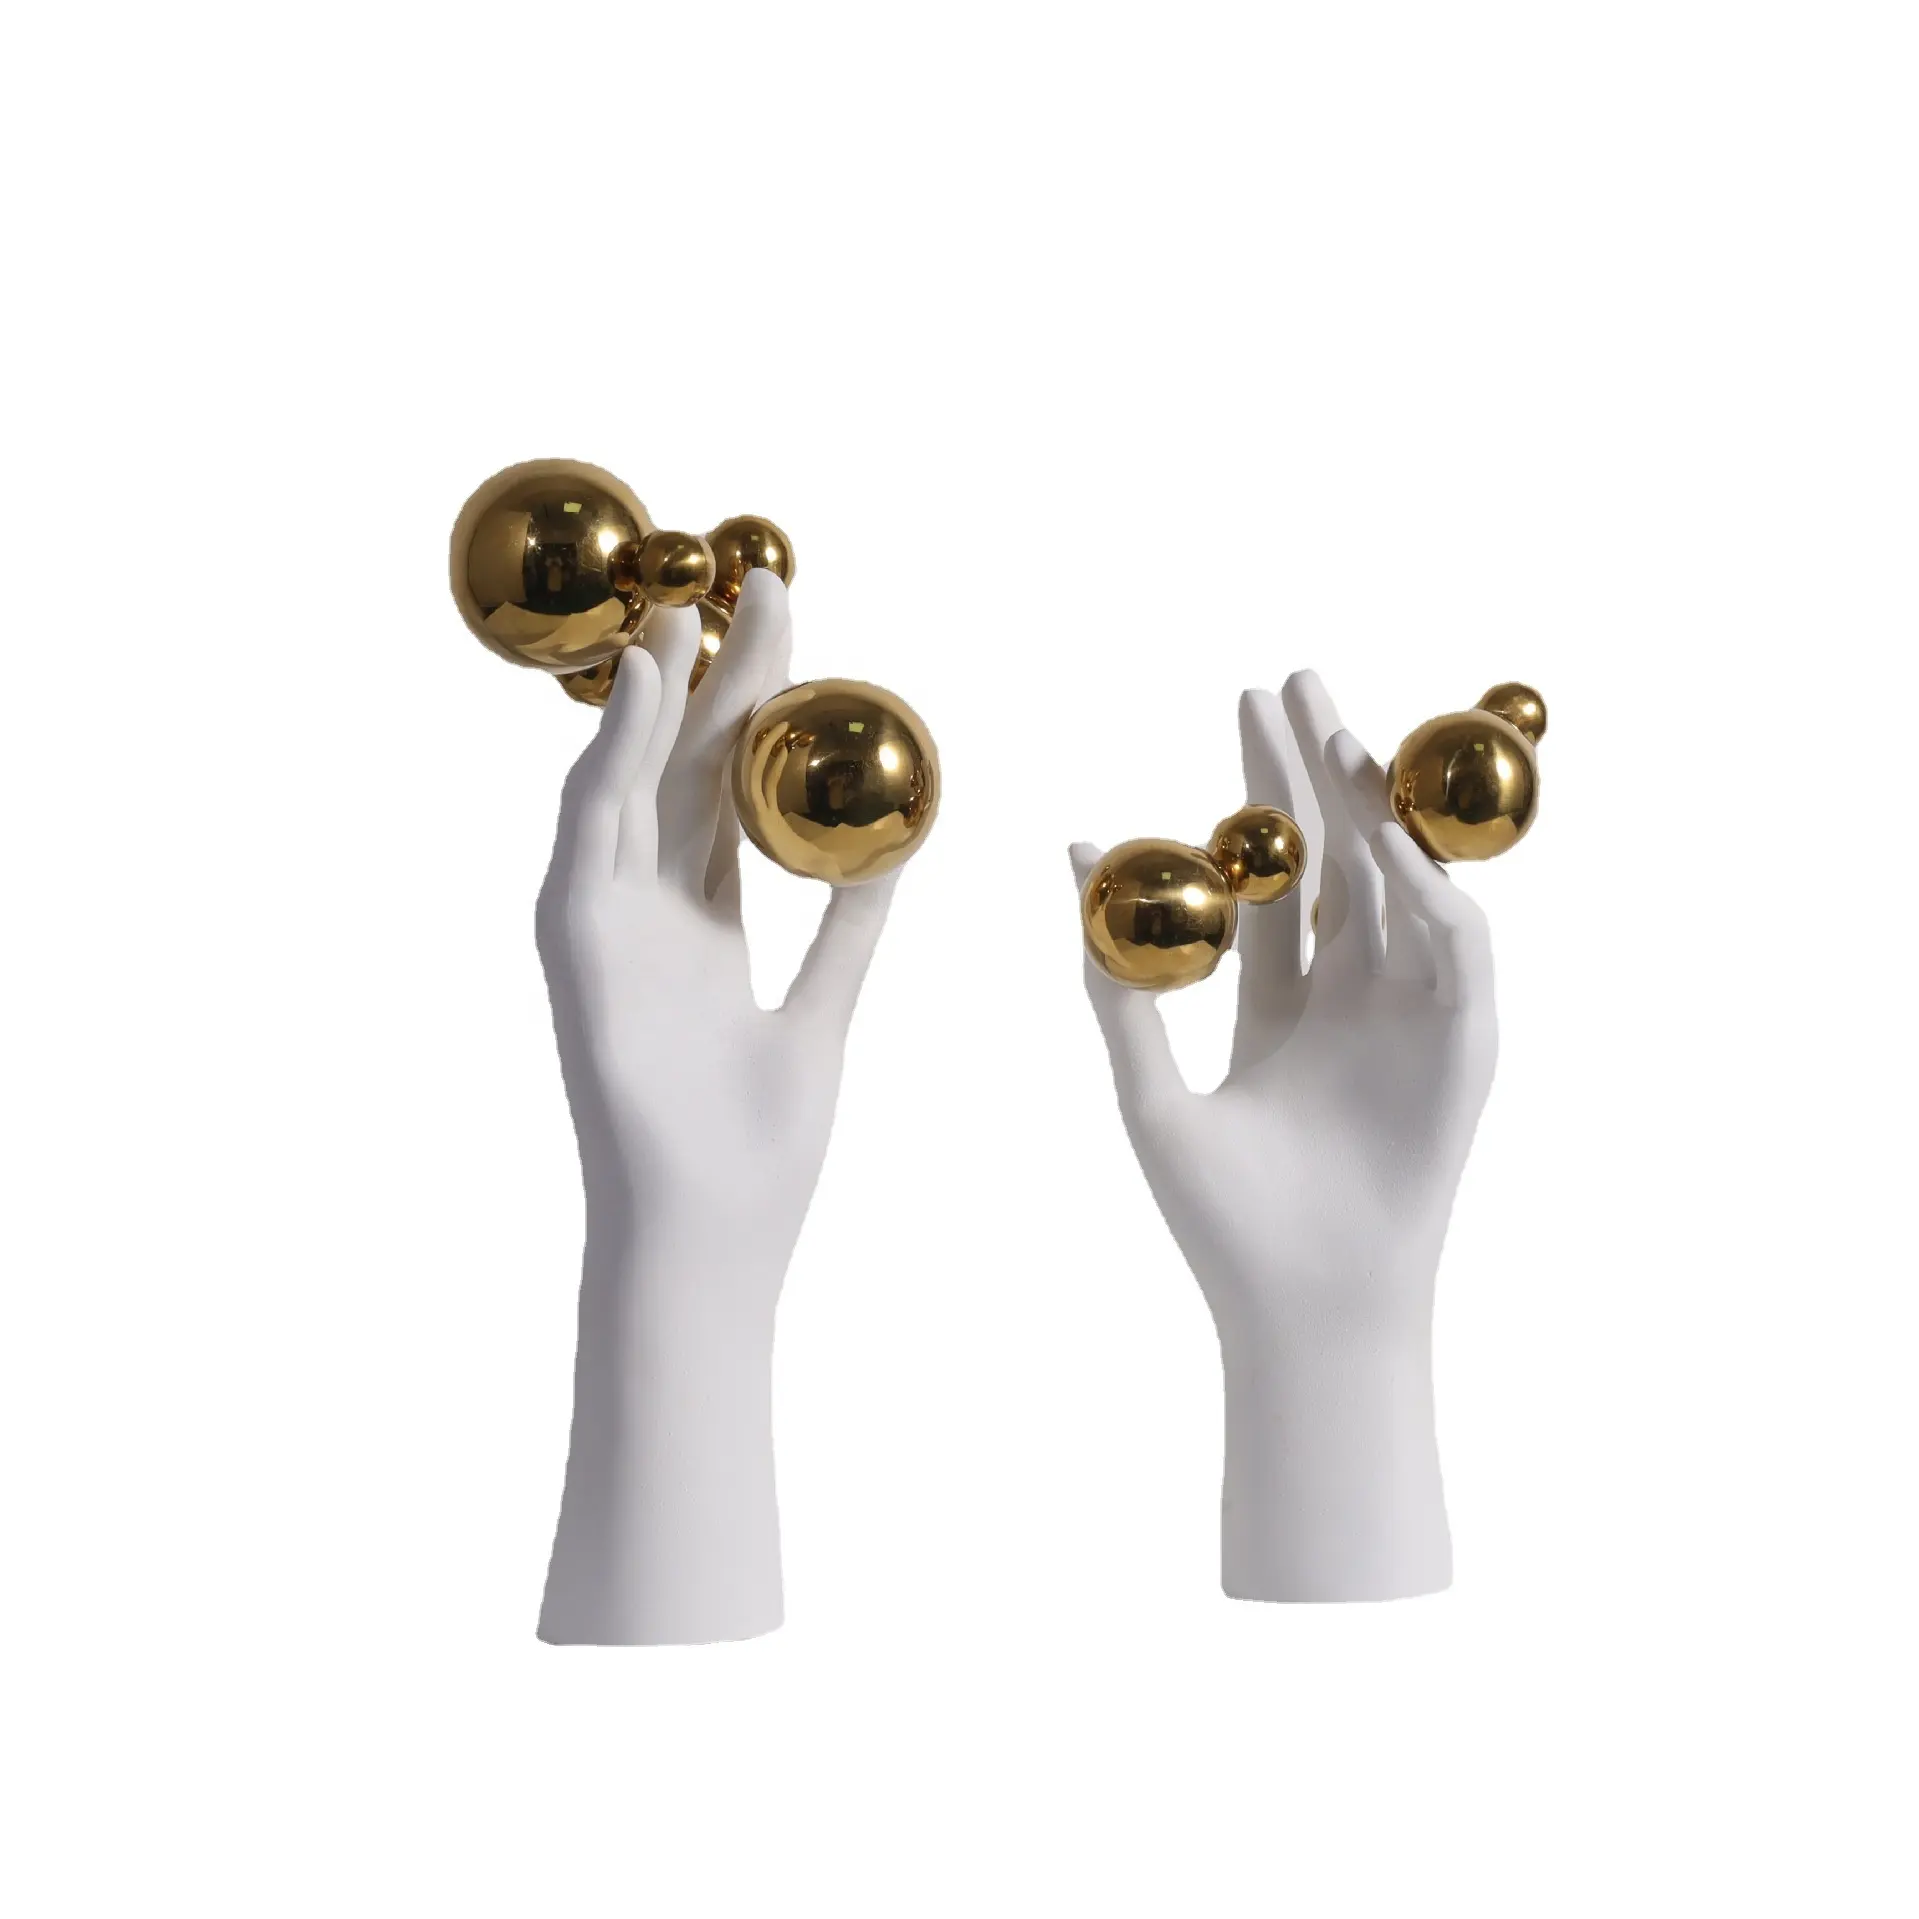 מודרני מופשט יד צורת דמות פיסול עם זהב כדור למלון